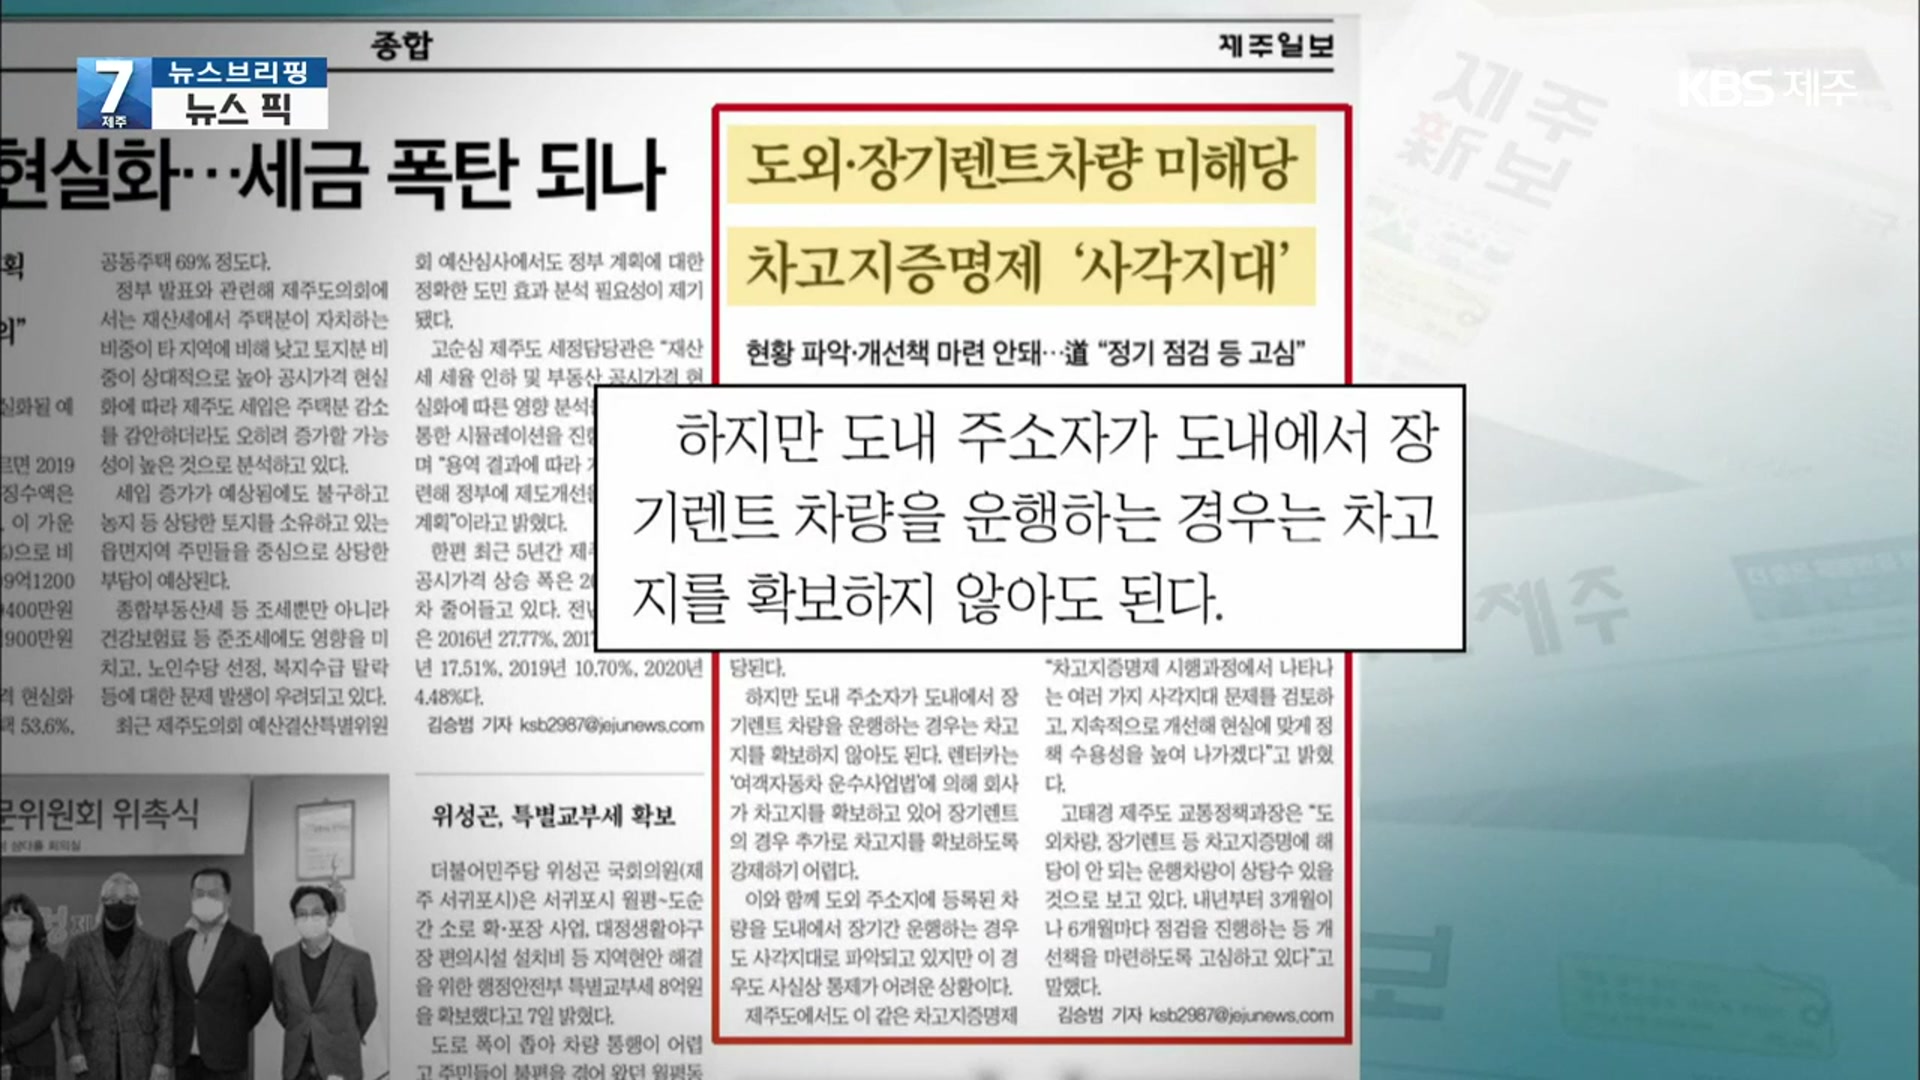 [뉴스브리핑] 도외·장기렌트차량 미해당, 차고지증명제 ‘사각지대’ 외